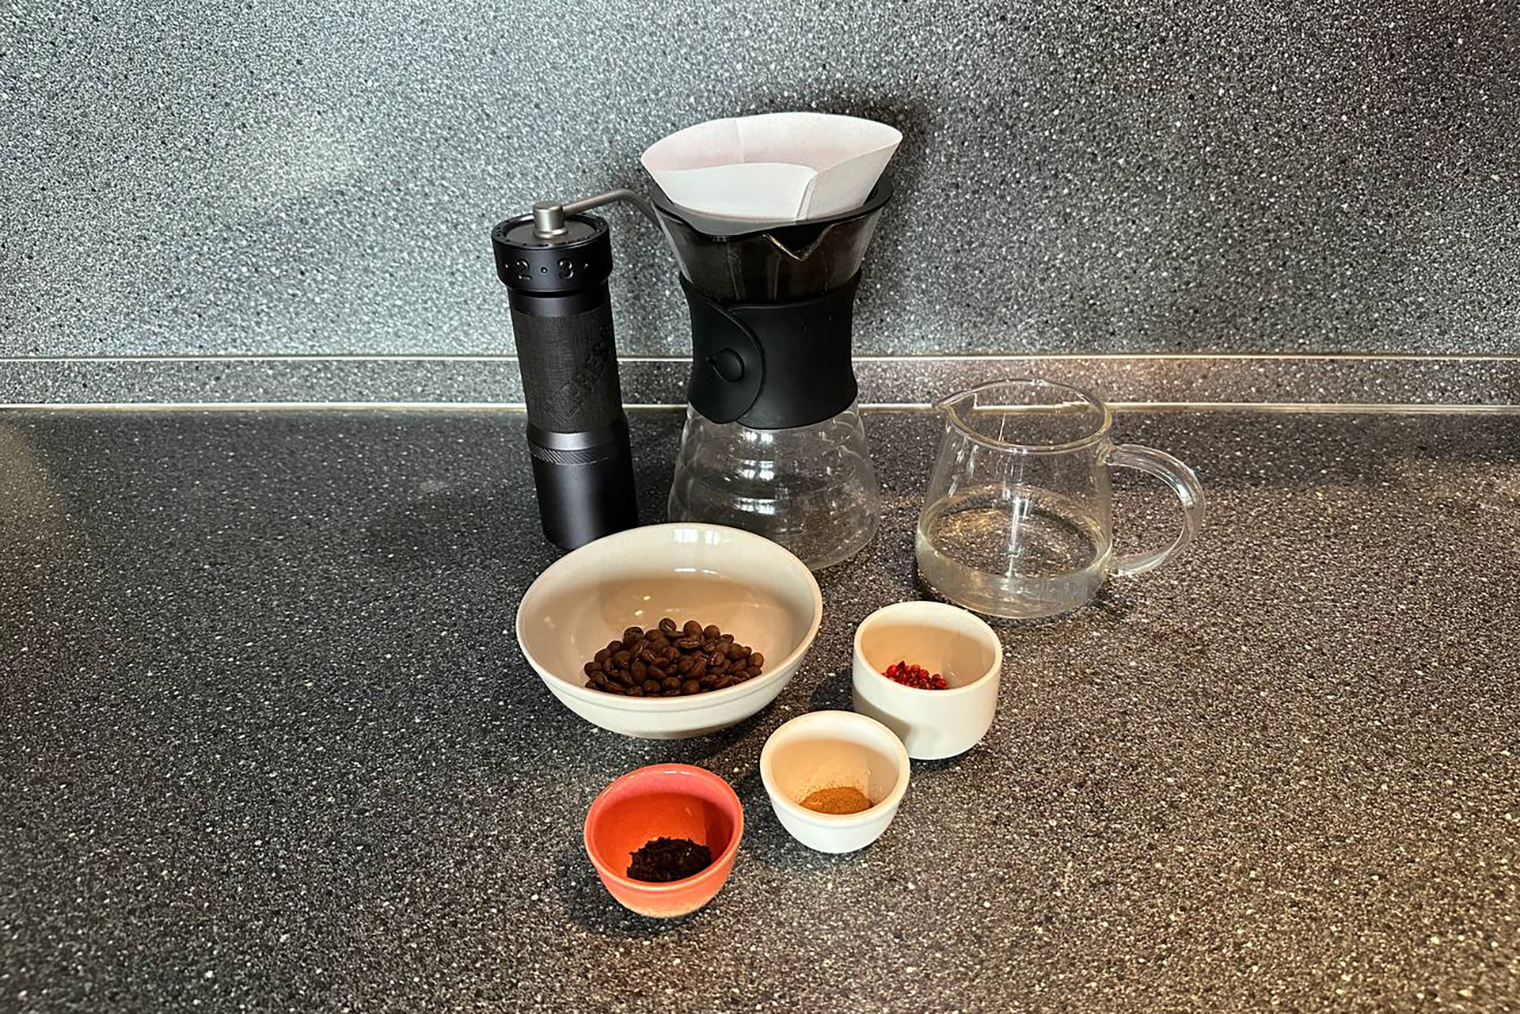 Ингредиенты и инвентарь для кофе со специями из «Дюны»